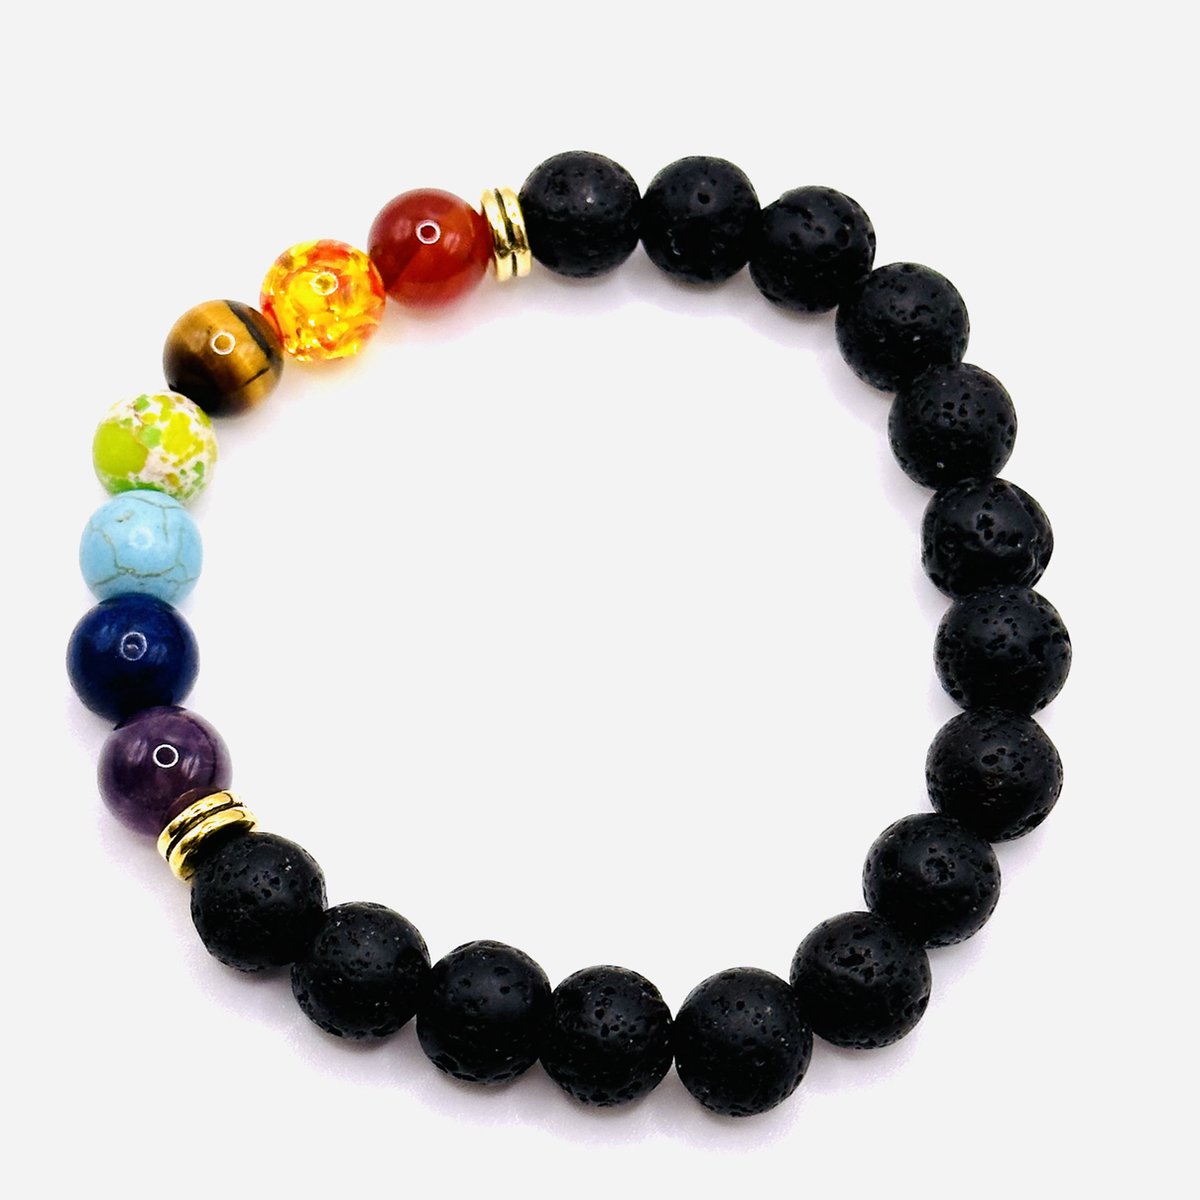 Armband Regenboog Natuurlijke Lava Kralen - Voor Hem - Voor Man - Voor Haar - Voor Vrouw - Armband Cadeau